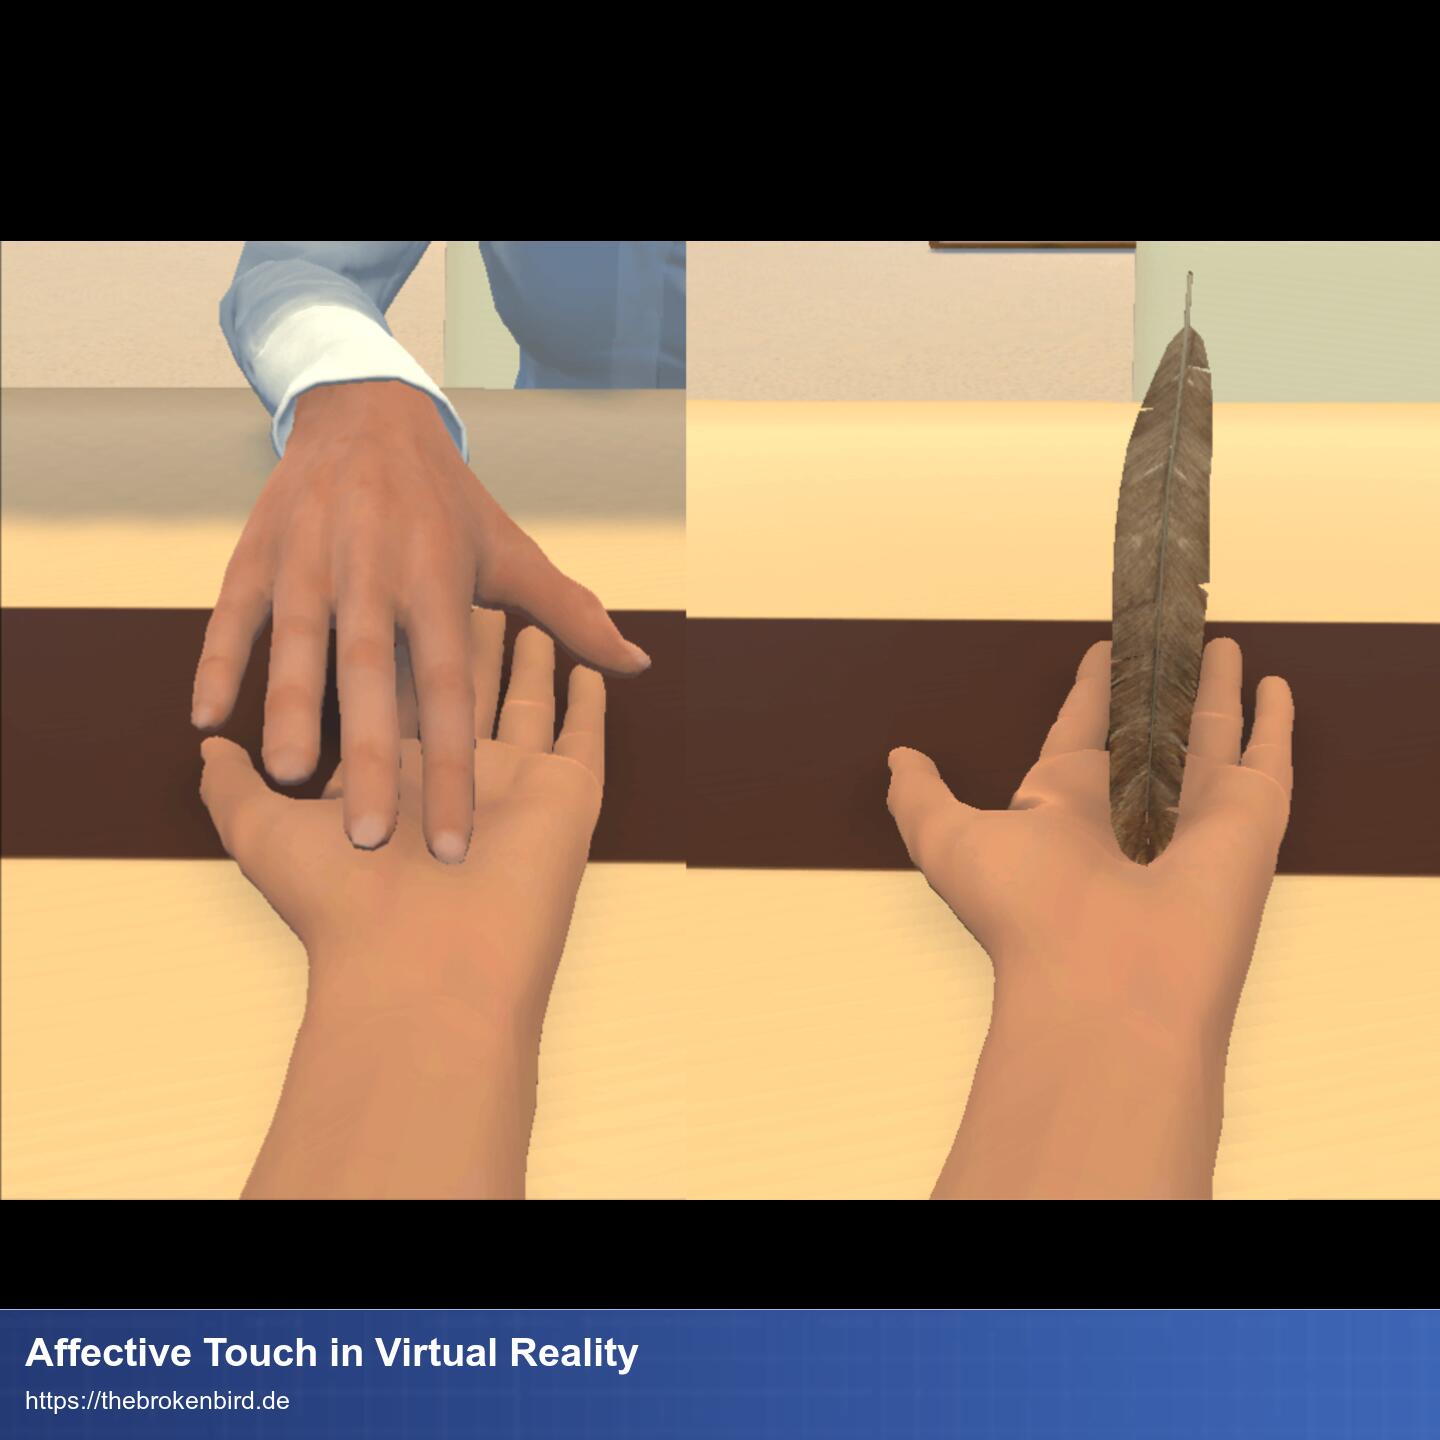 Links: Eine virtuelle Hand ausgestreckt aus der Sicht des Spielenden. Gegenüber sitzt ein Avatar der mit zwei Fingern entlang 'unserer' Handfläche streicht. Rechts: Die gleiche Szene, aber statt dem Avatar schwebt eine Feder im Raum und streicht 'unsere' Handfläche entlang.